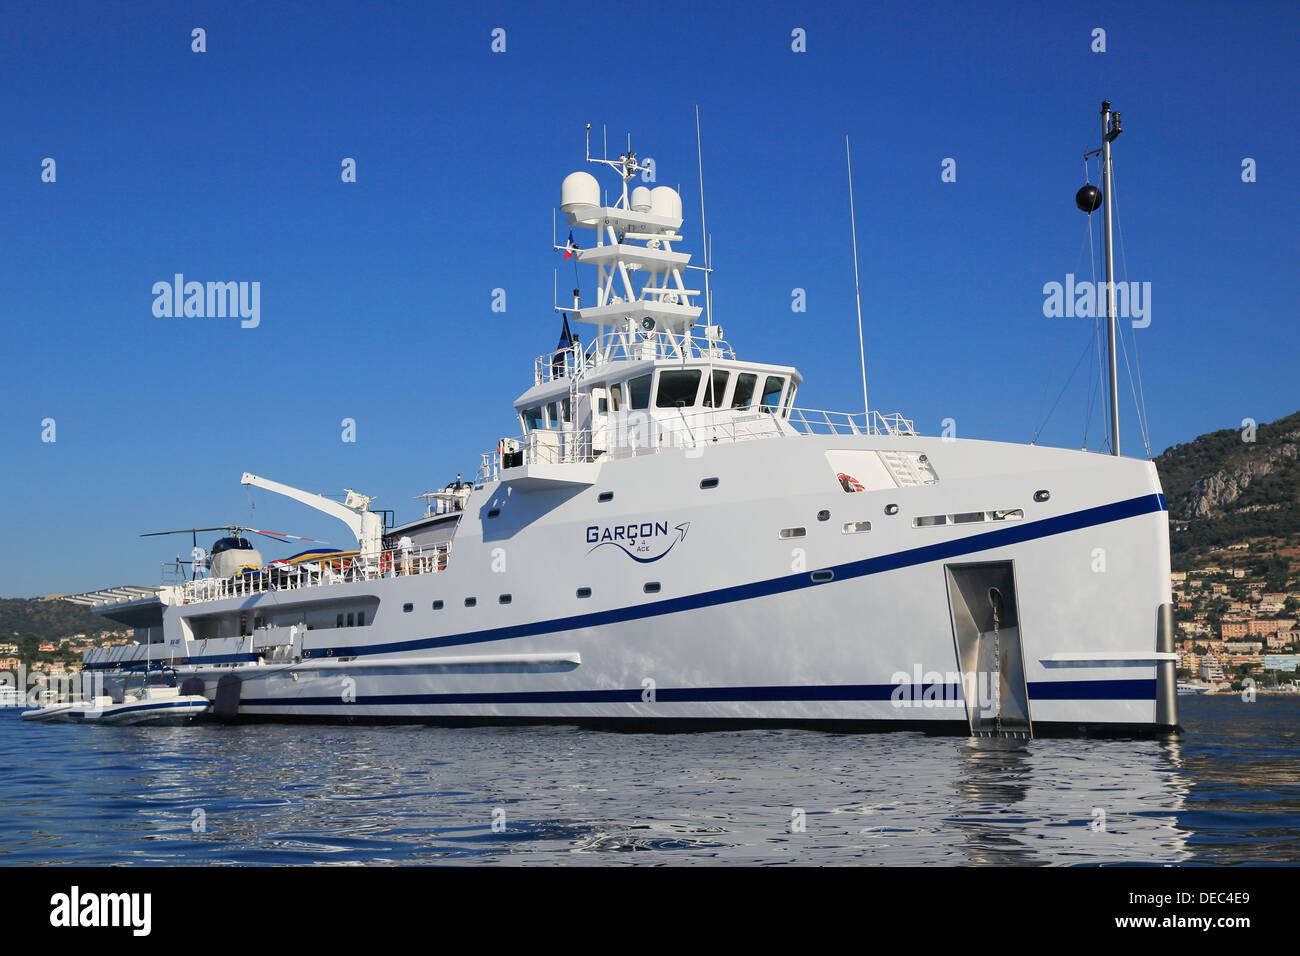 Damen Meer Axt Versorgungsschiff Garcon 4 Ace, Versorgungsschiff für die Ace motor Yacht, Beaulieu-Sur-Mer, Département Alpes-Maritimes, Stockfoto